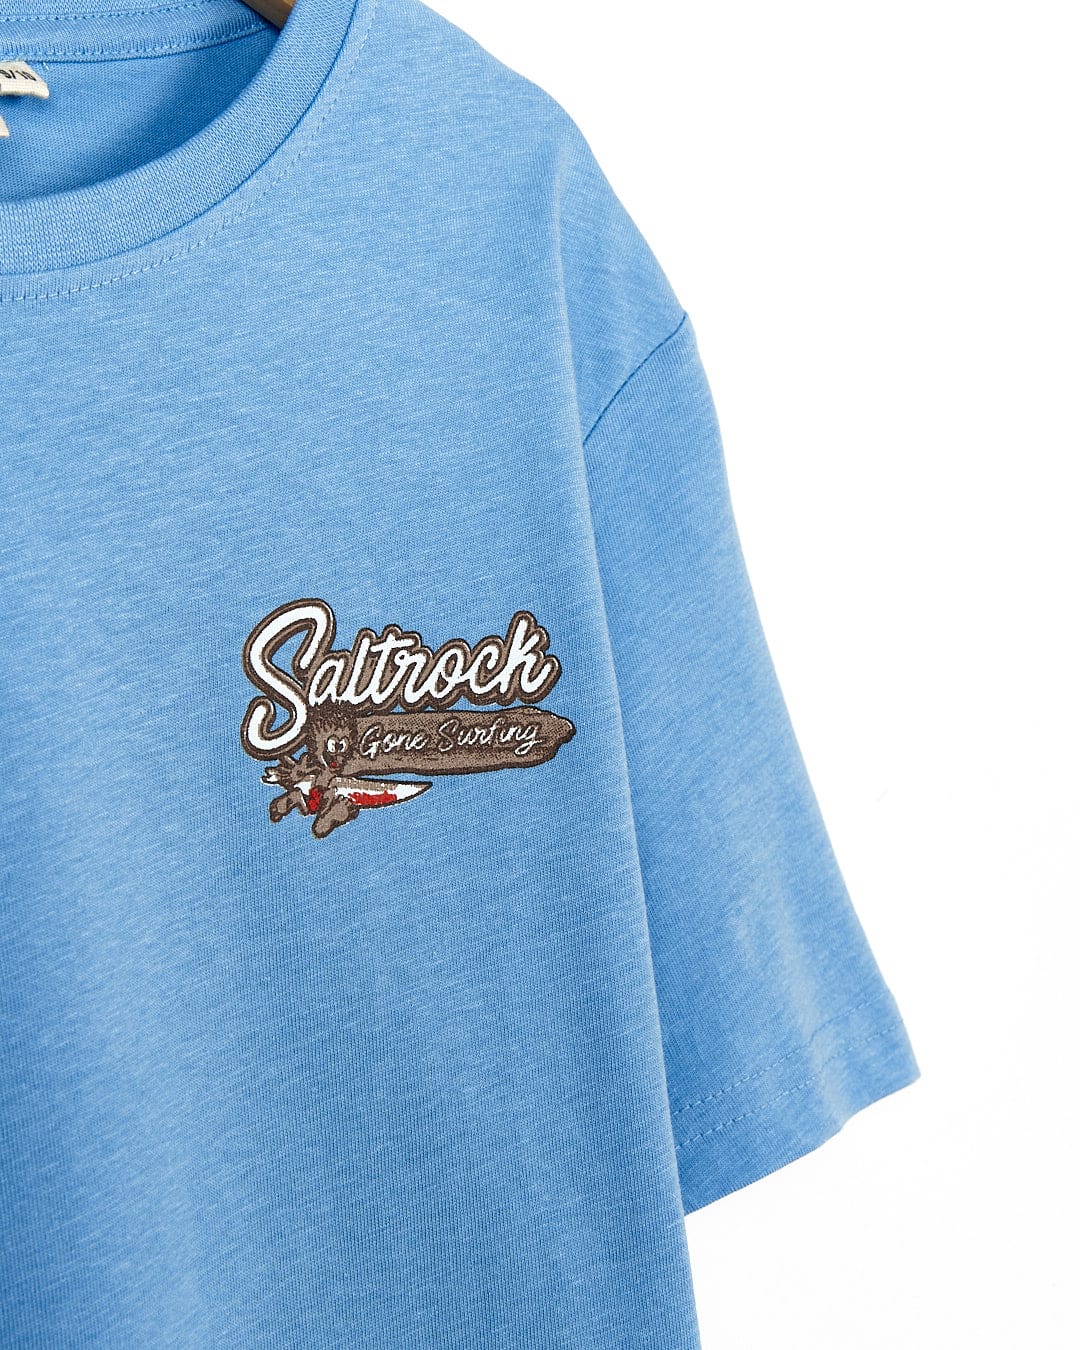 A Saltrock - Beach Signs Devon - Kids Short Sleeve T-Shirt - Light Blue with a brown logo on it.